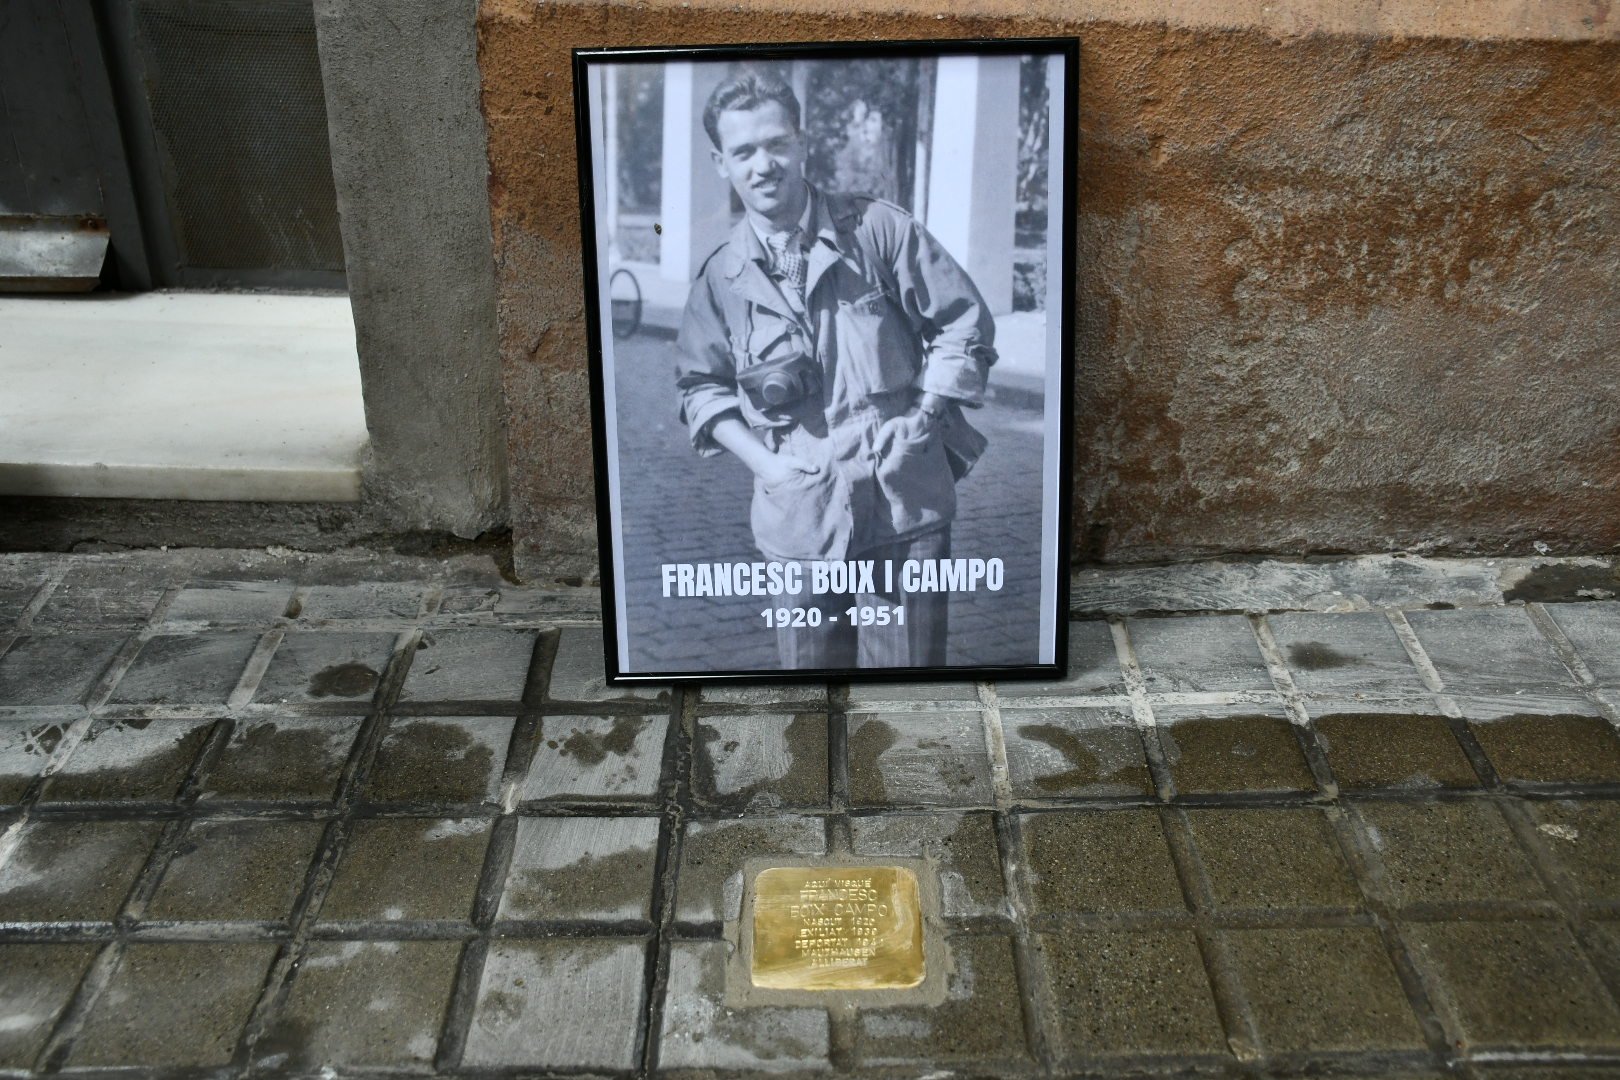 Francesc Boix, el fotògraf de Mauthausen, ja té stolpersteine a Barcelona